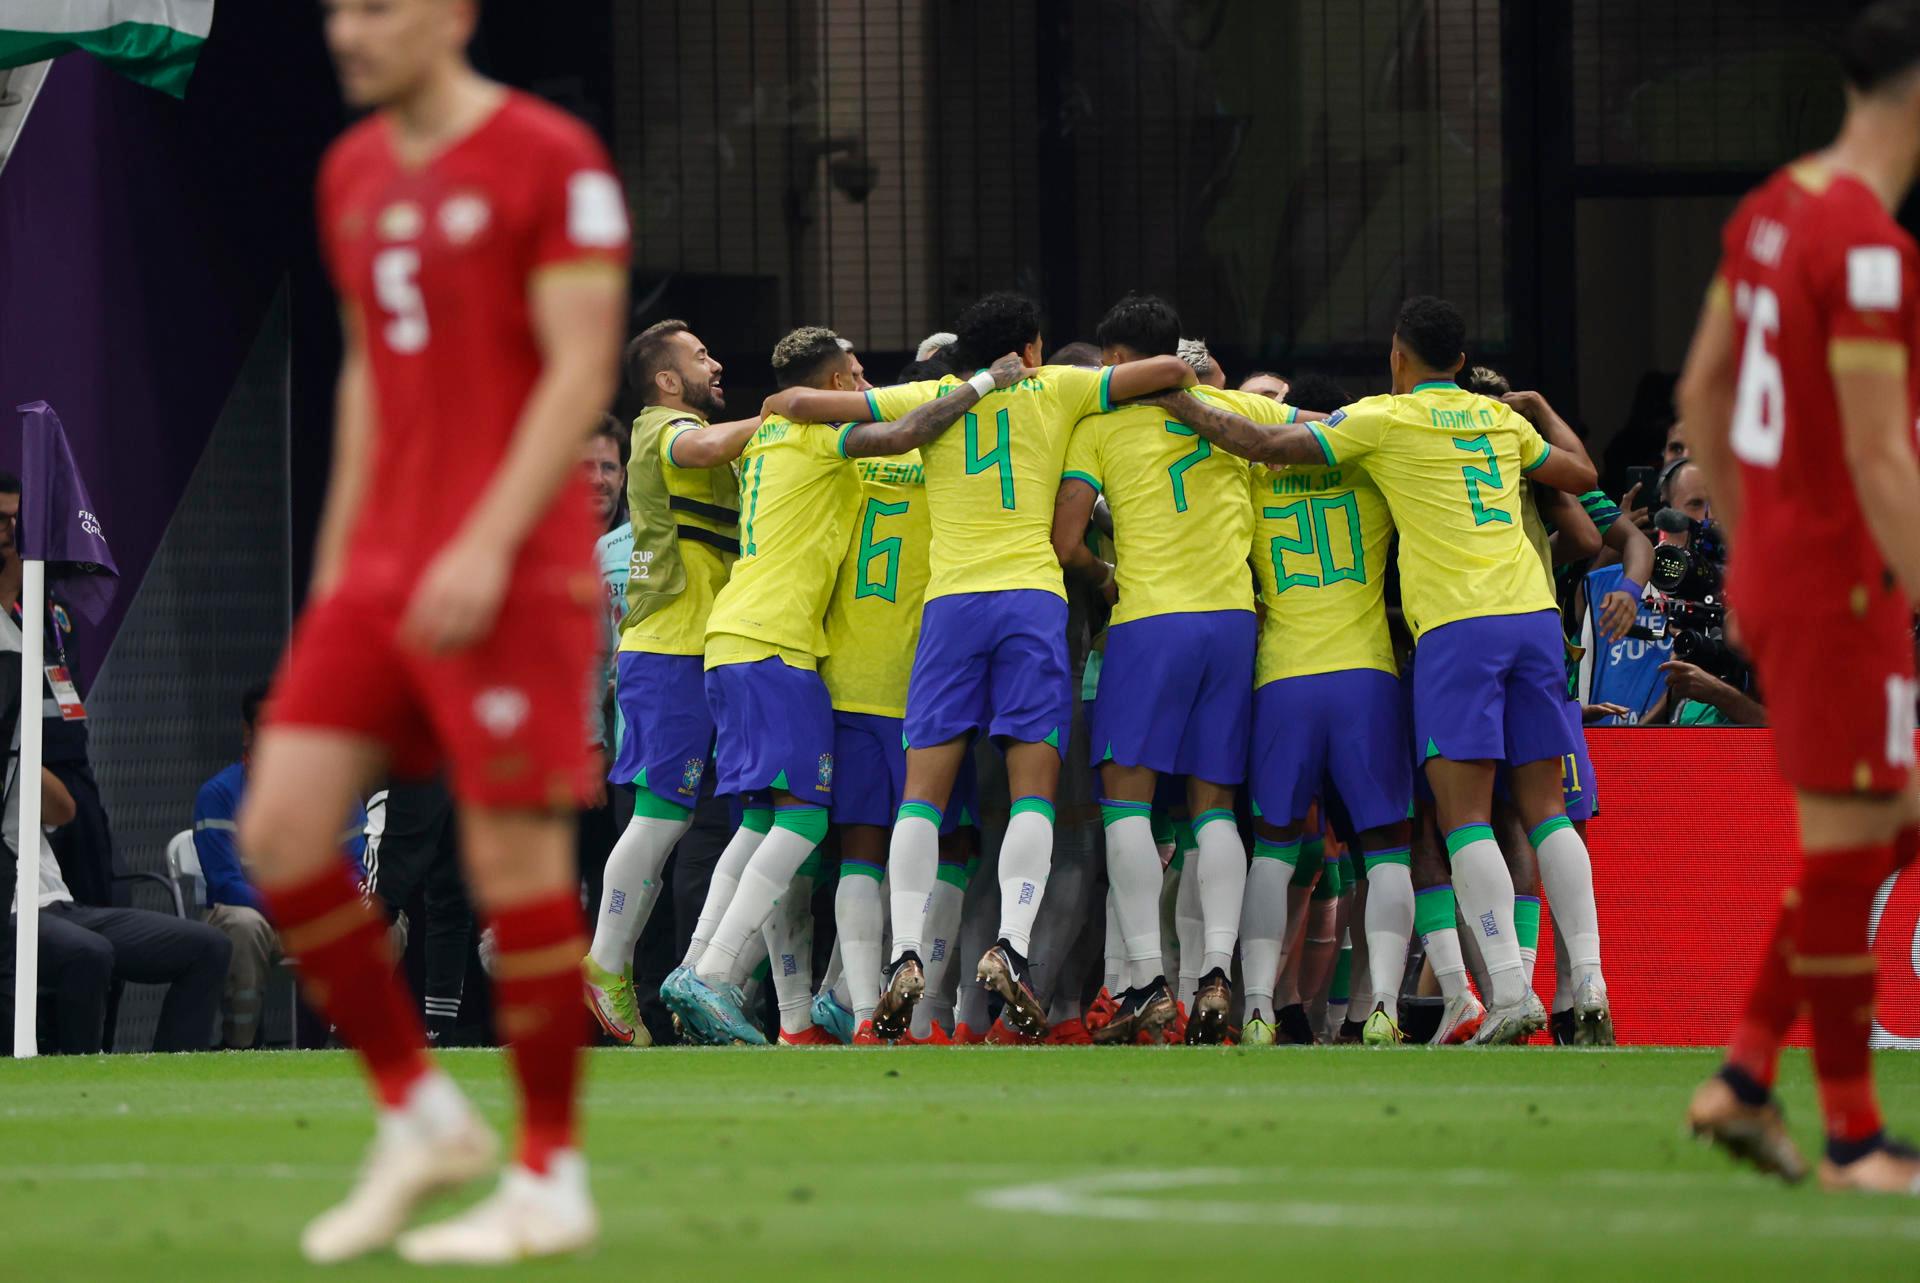 Seleção brasileira.